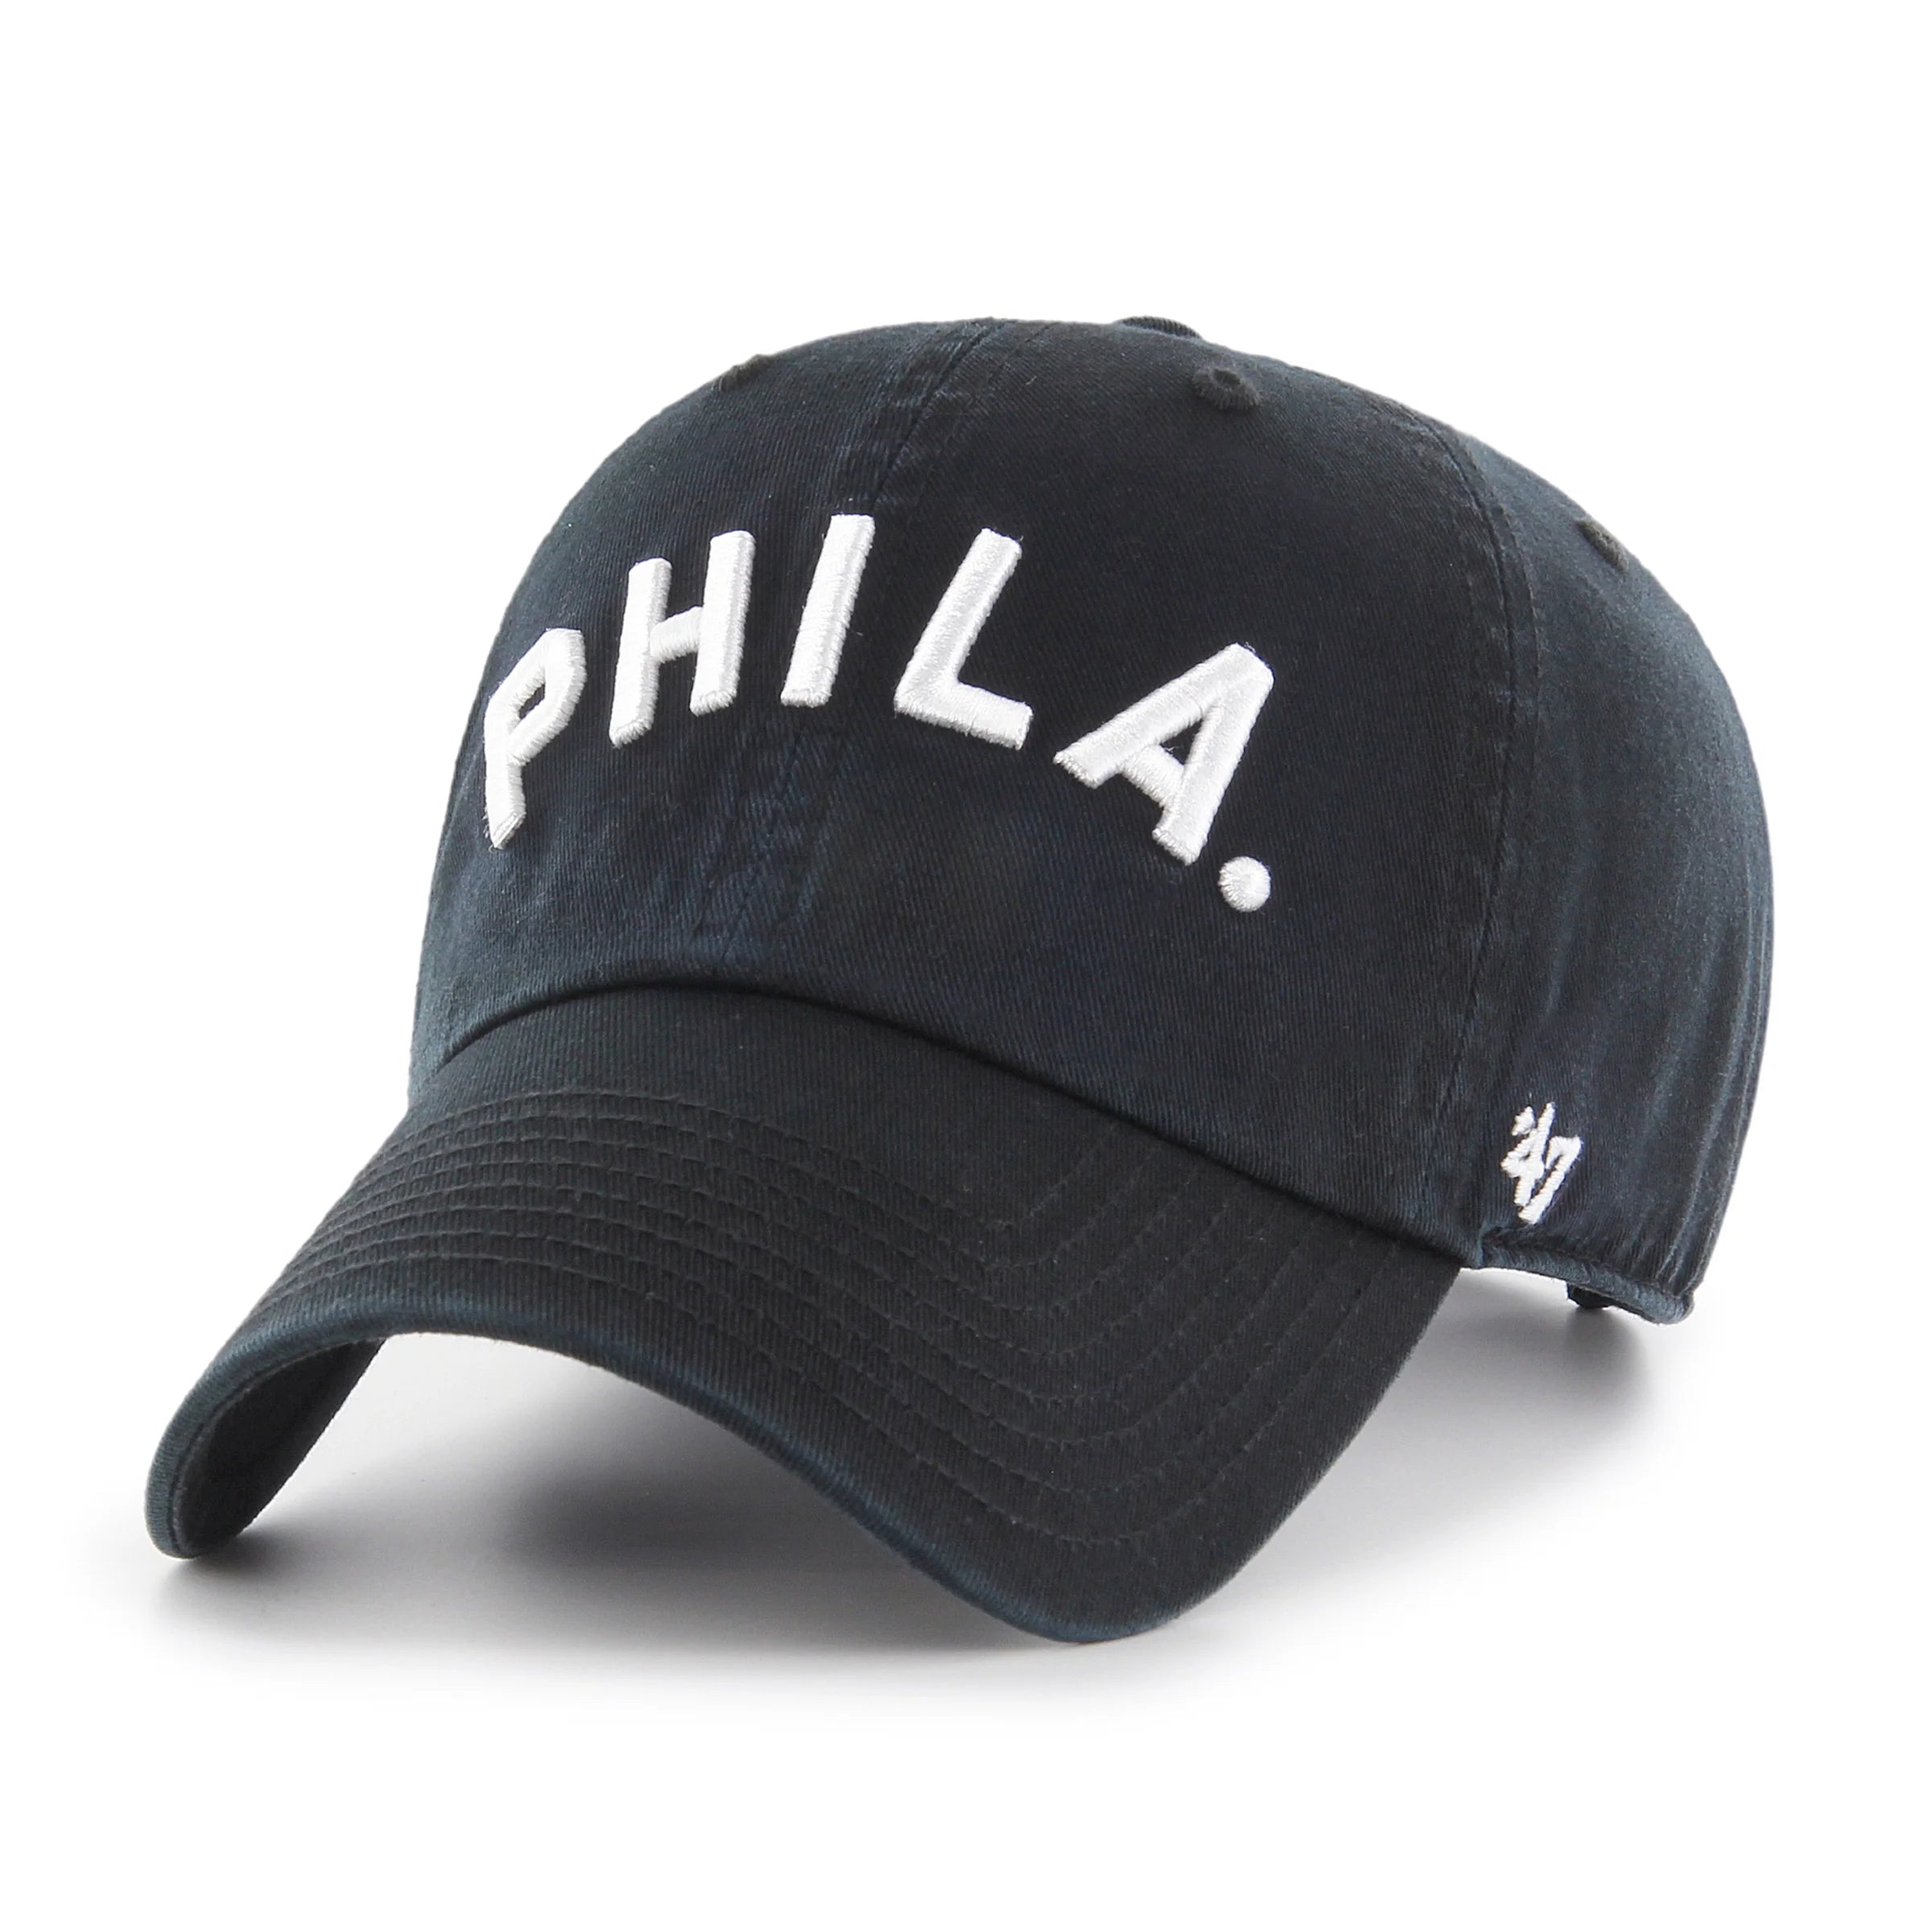 Philadelphia Philies Cooperstown